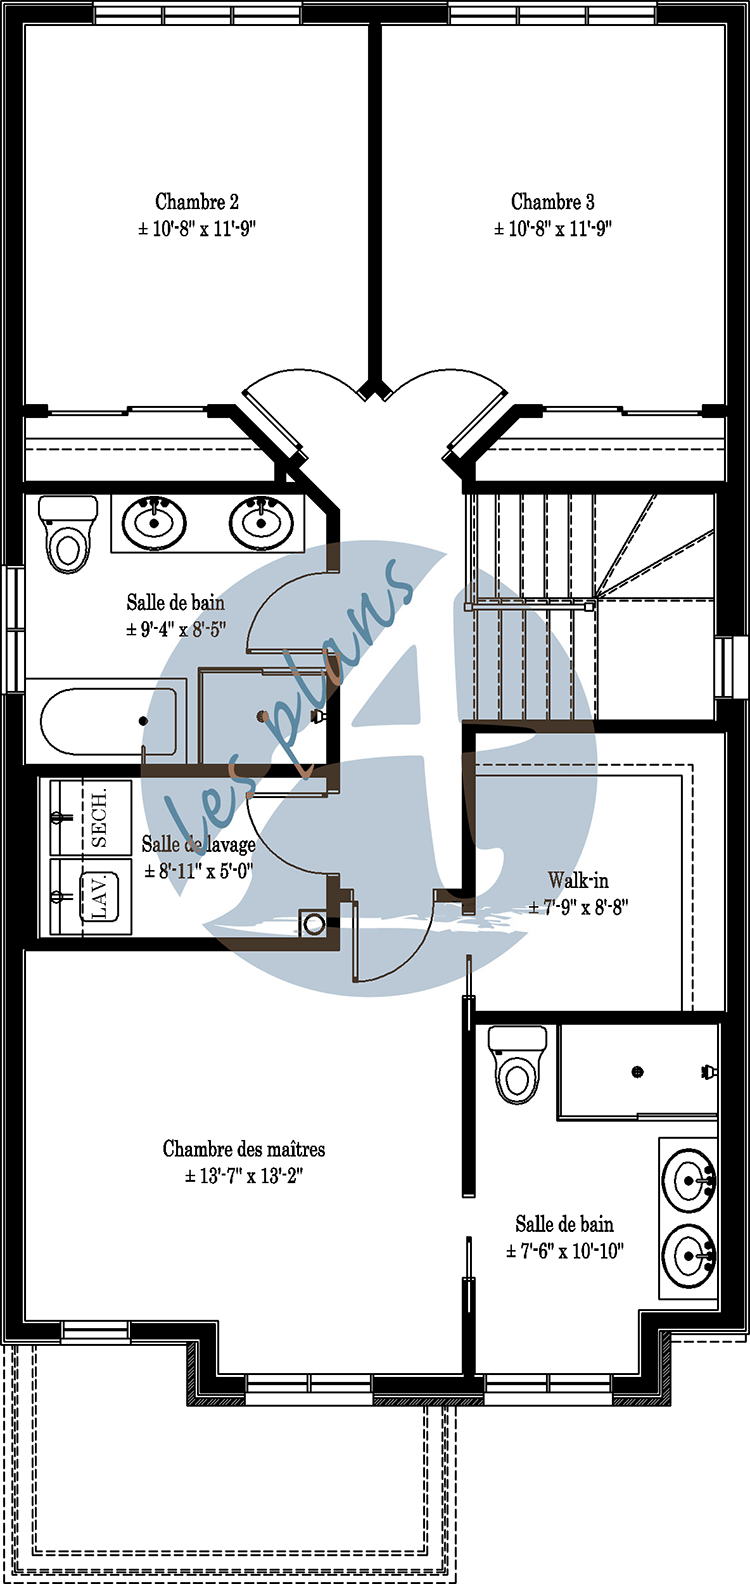 Plan de l'étage - Maison à 2 étages 21021